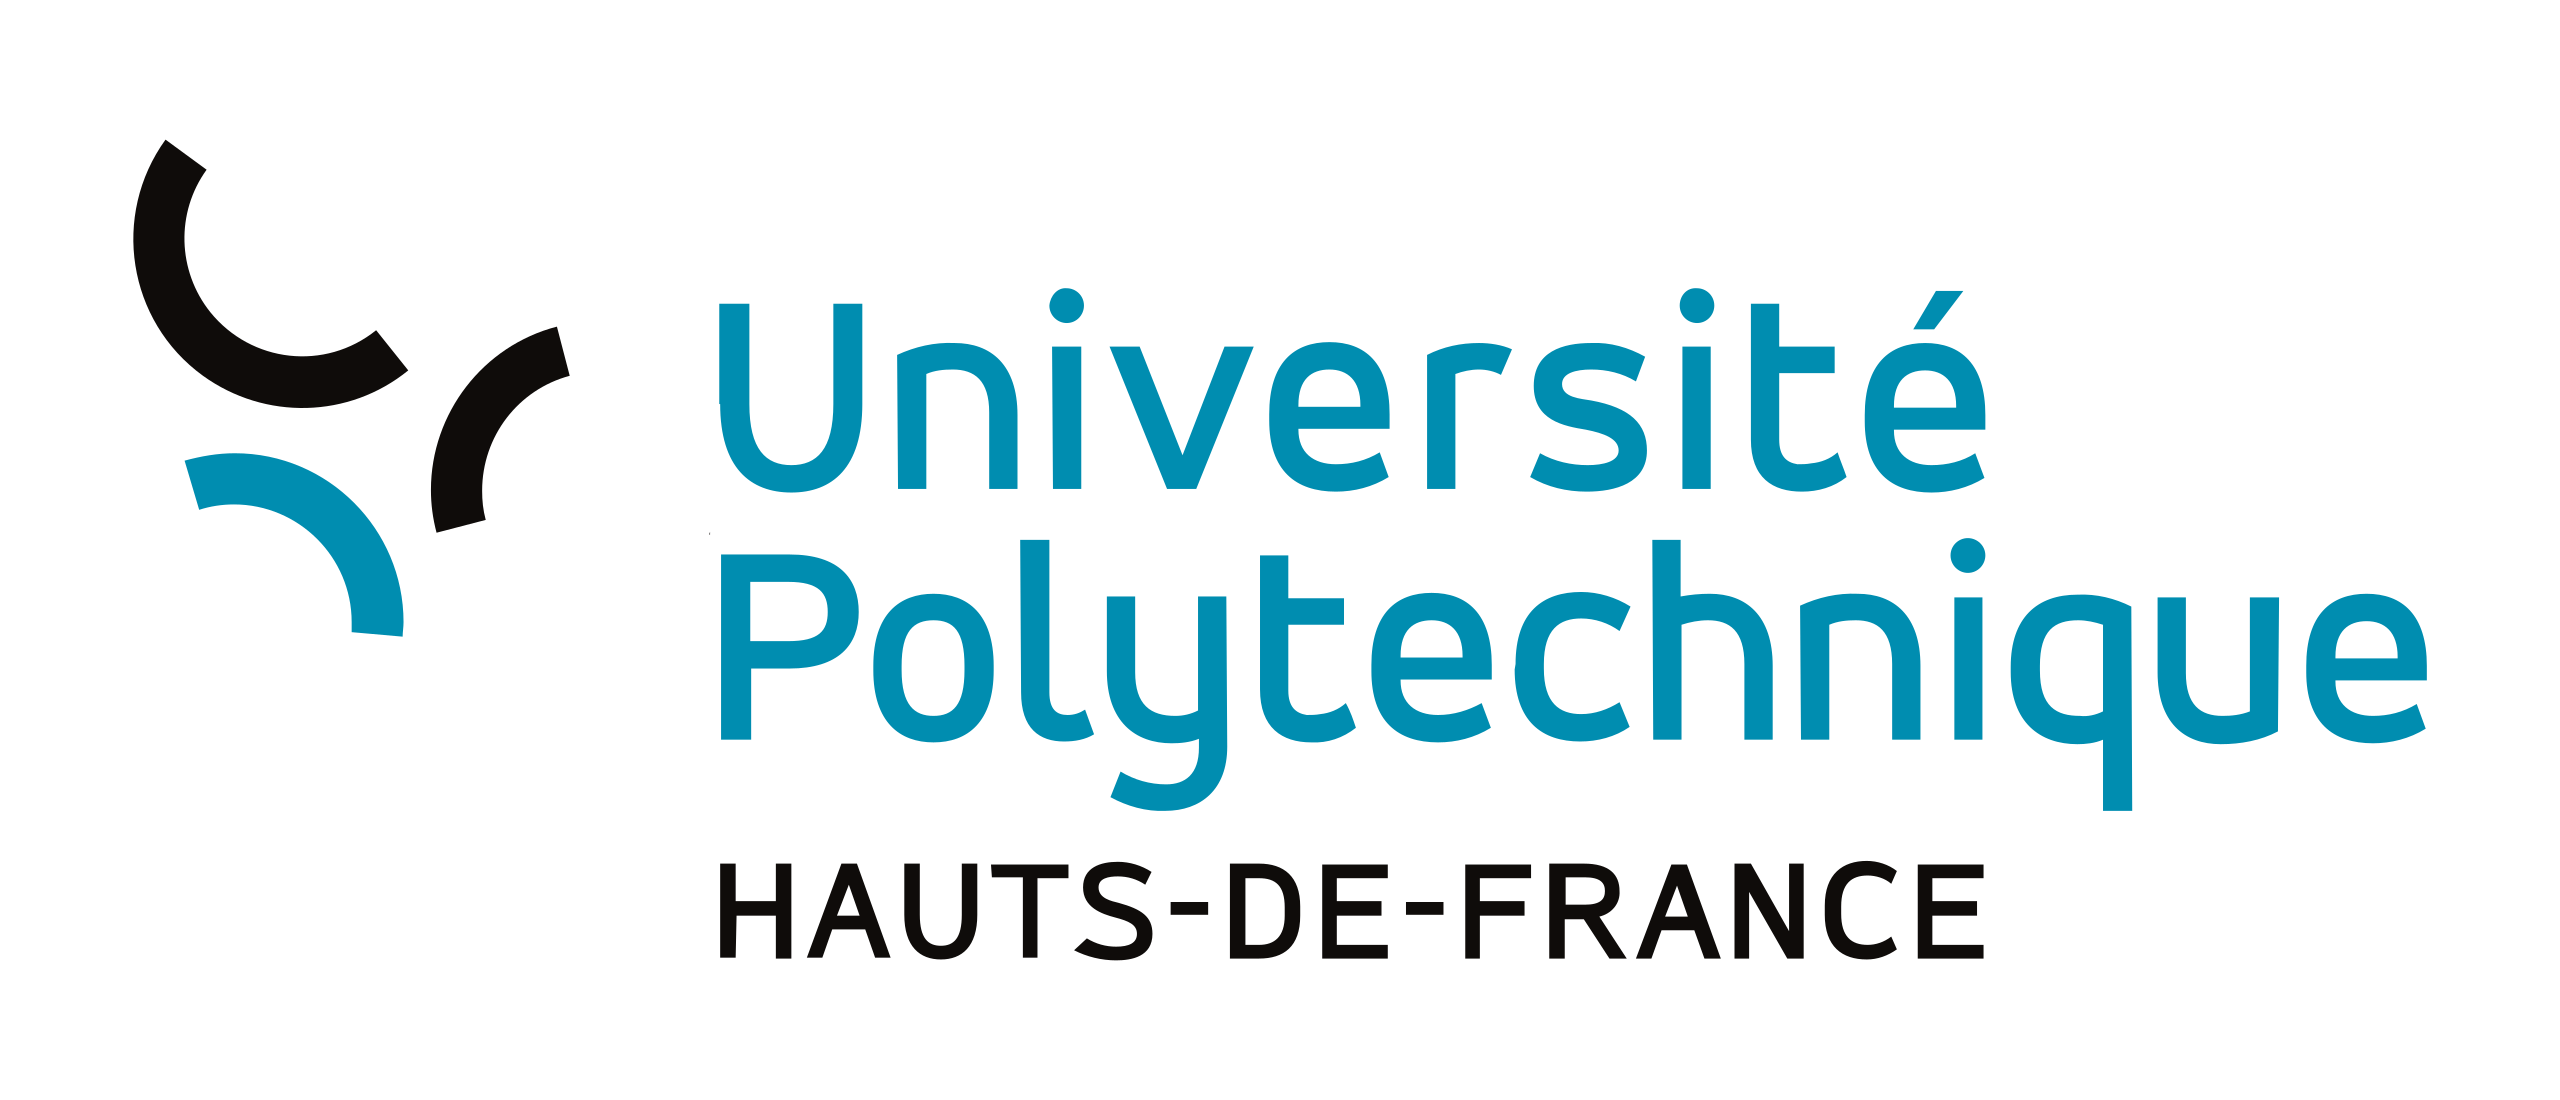 Avis d’appel à manifestation d’intérêt pour une thèse de doctorat en Informatique, France